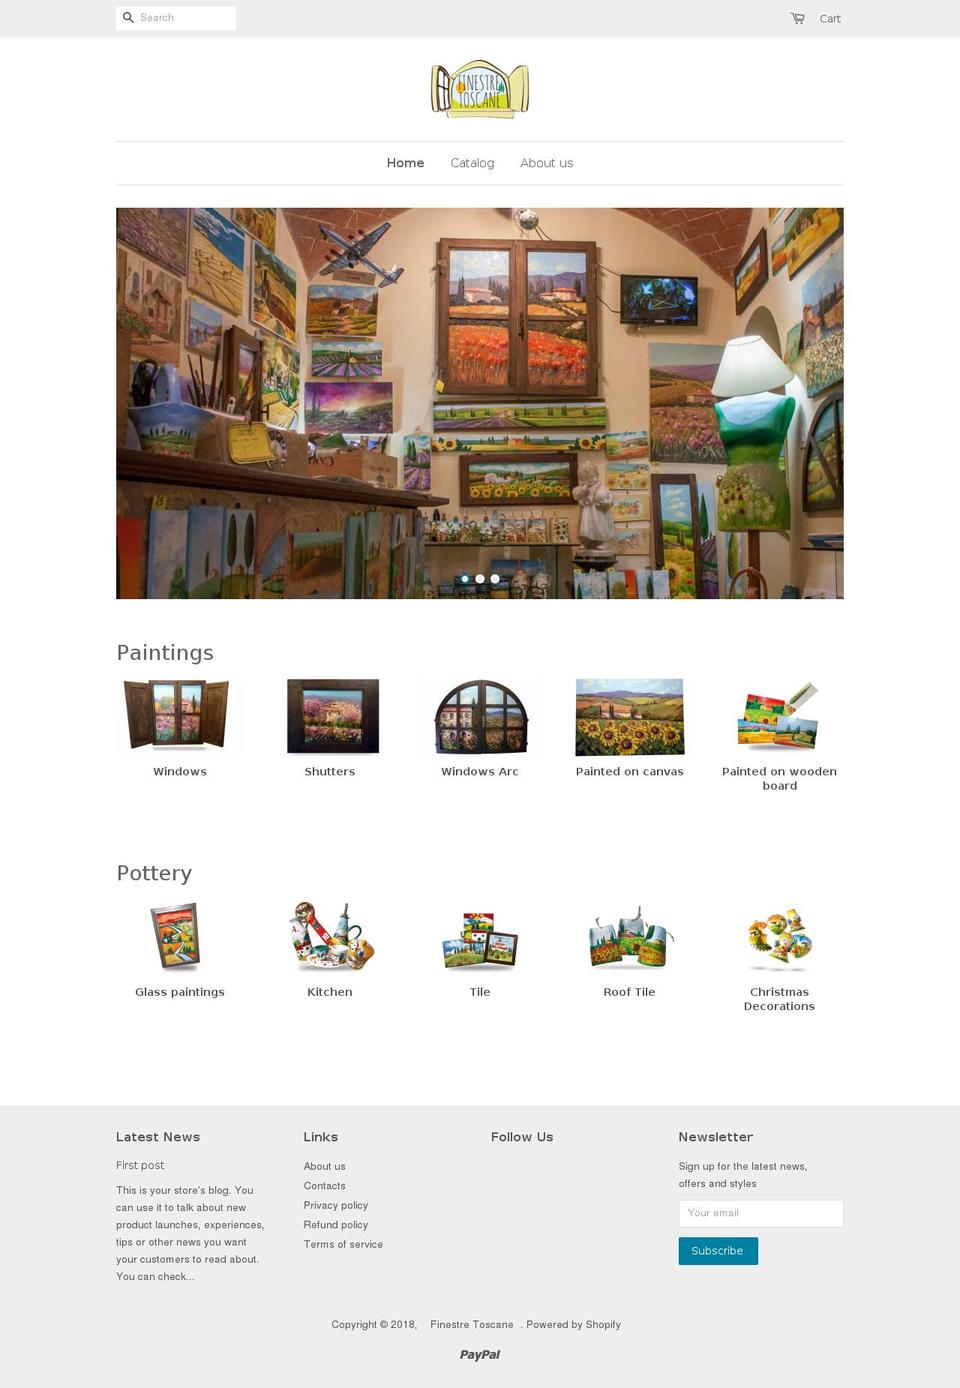 finestretoscane.com shopify website screenshot